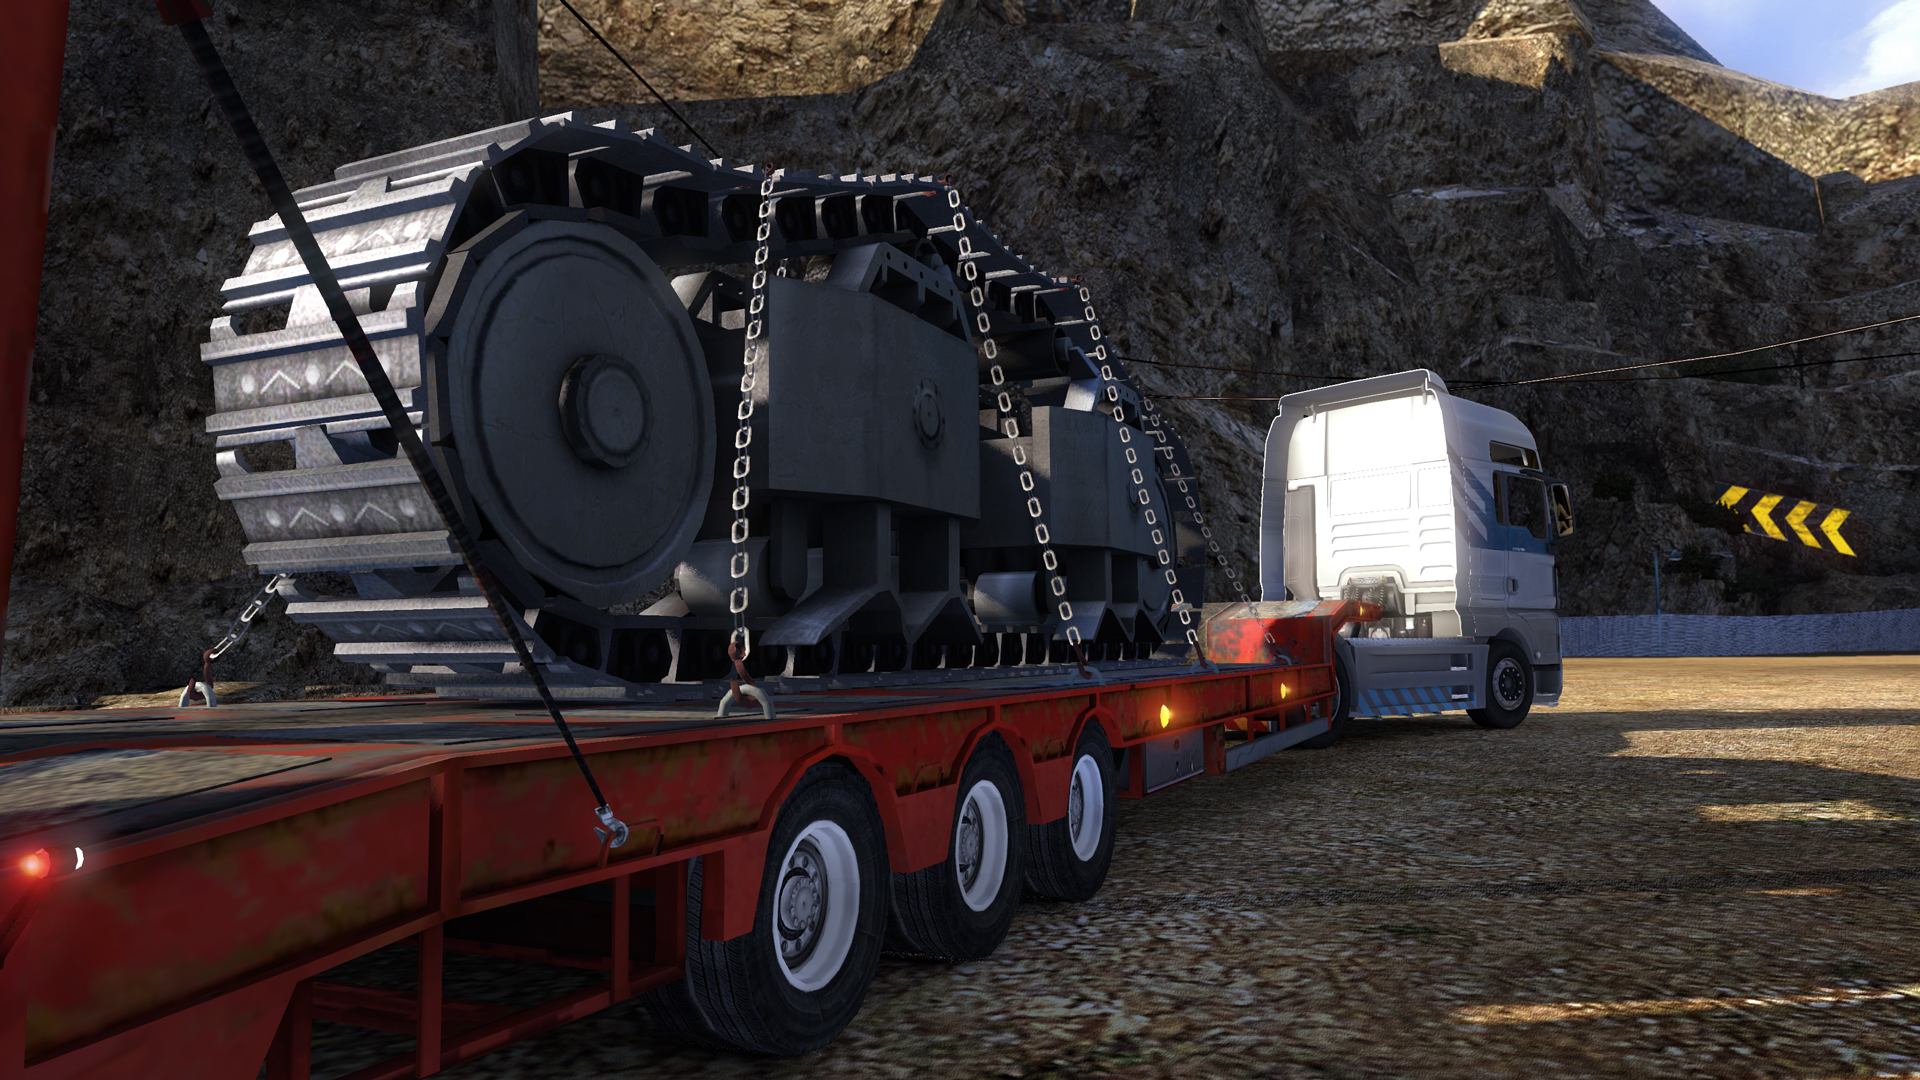 لعبة قيادة الشاحنات الرهيبة Euro Truck Simulator 2 تحتوى على 15 أضافة وأخر تحديث بحجم 950 Ss_05dffb80891a4694273ba8d7176a81da4e26d2b7.1920x1080